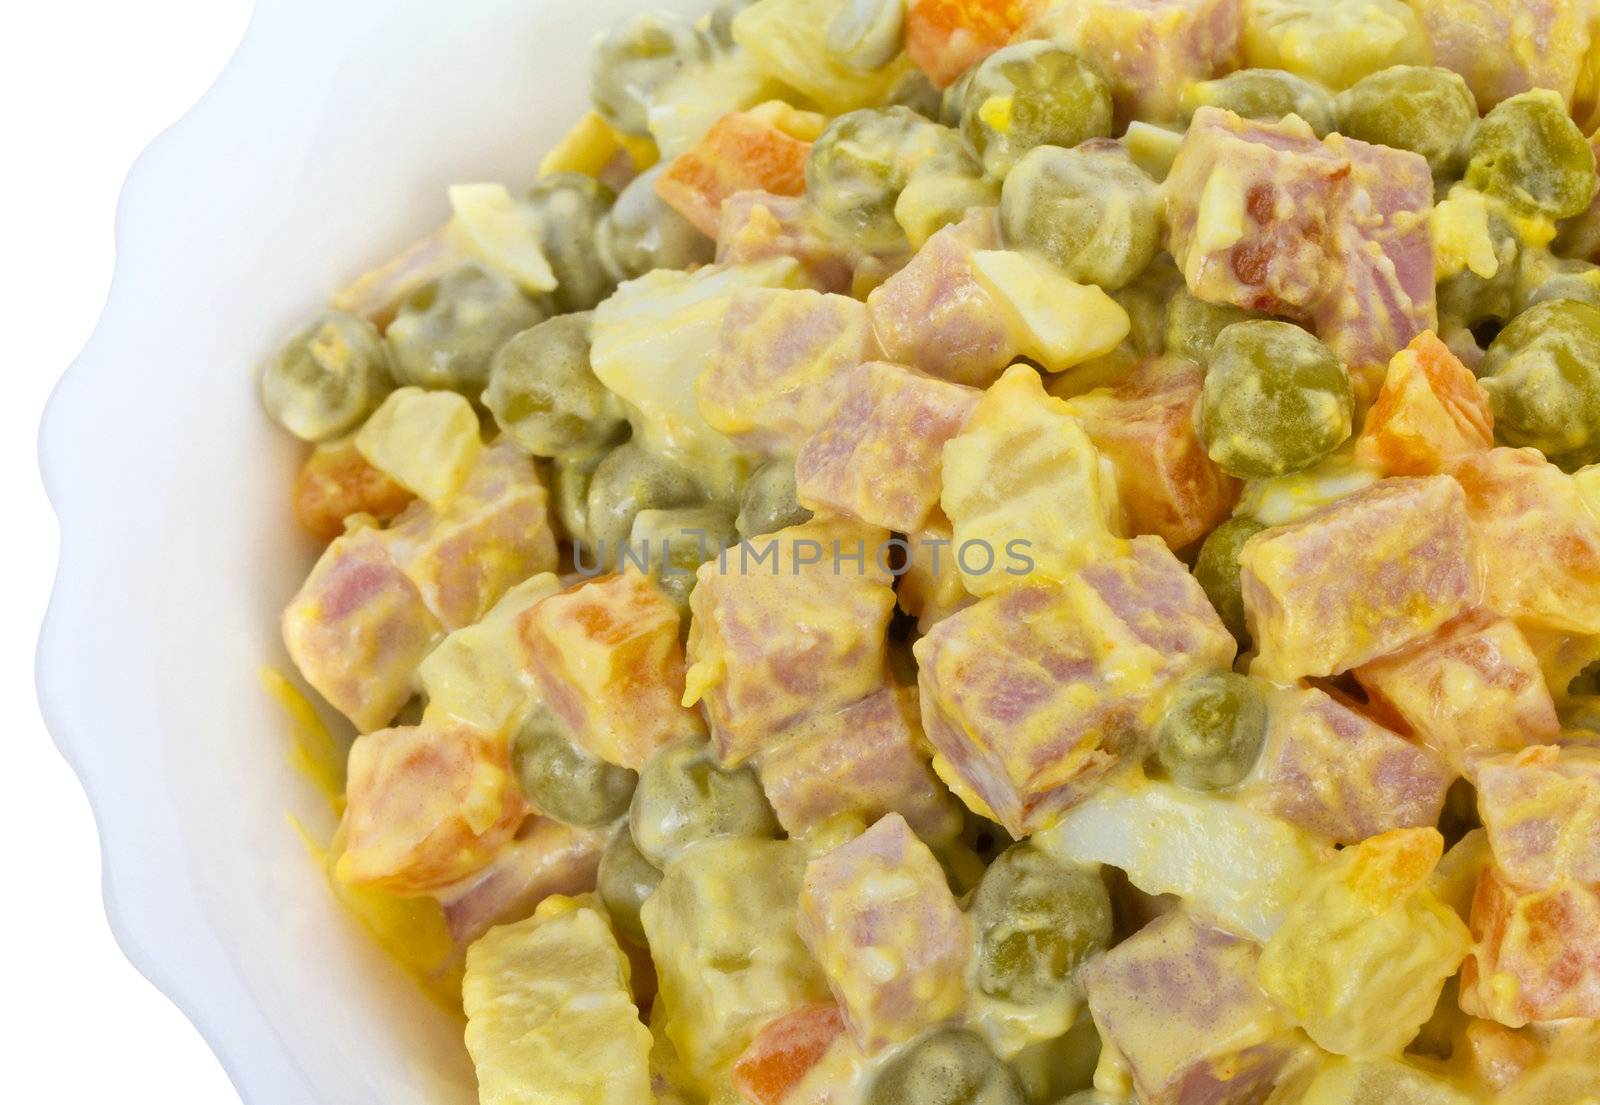 olivie salad in bowl by Alekcey